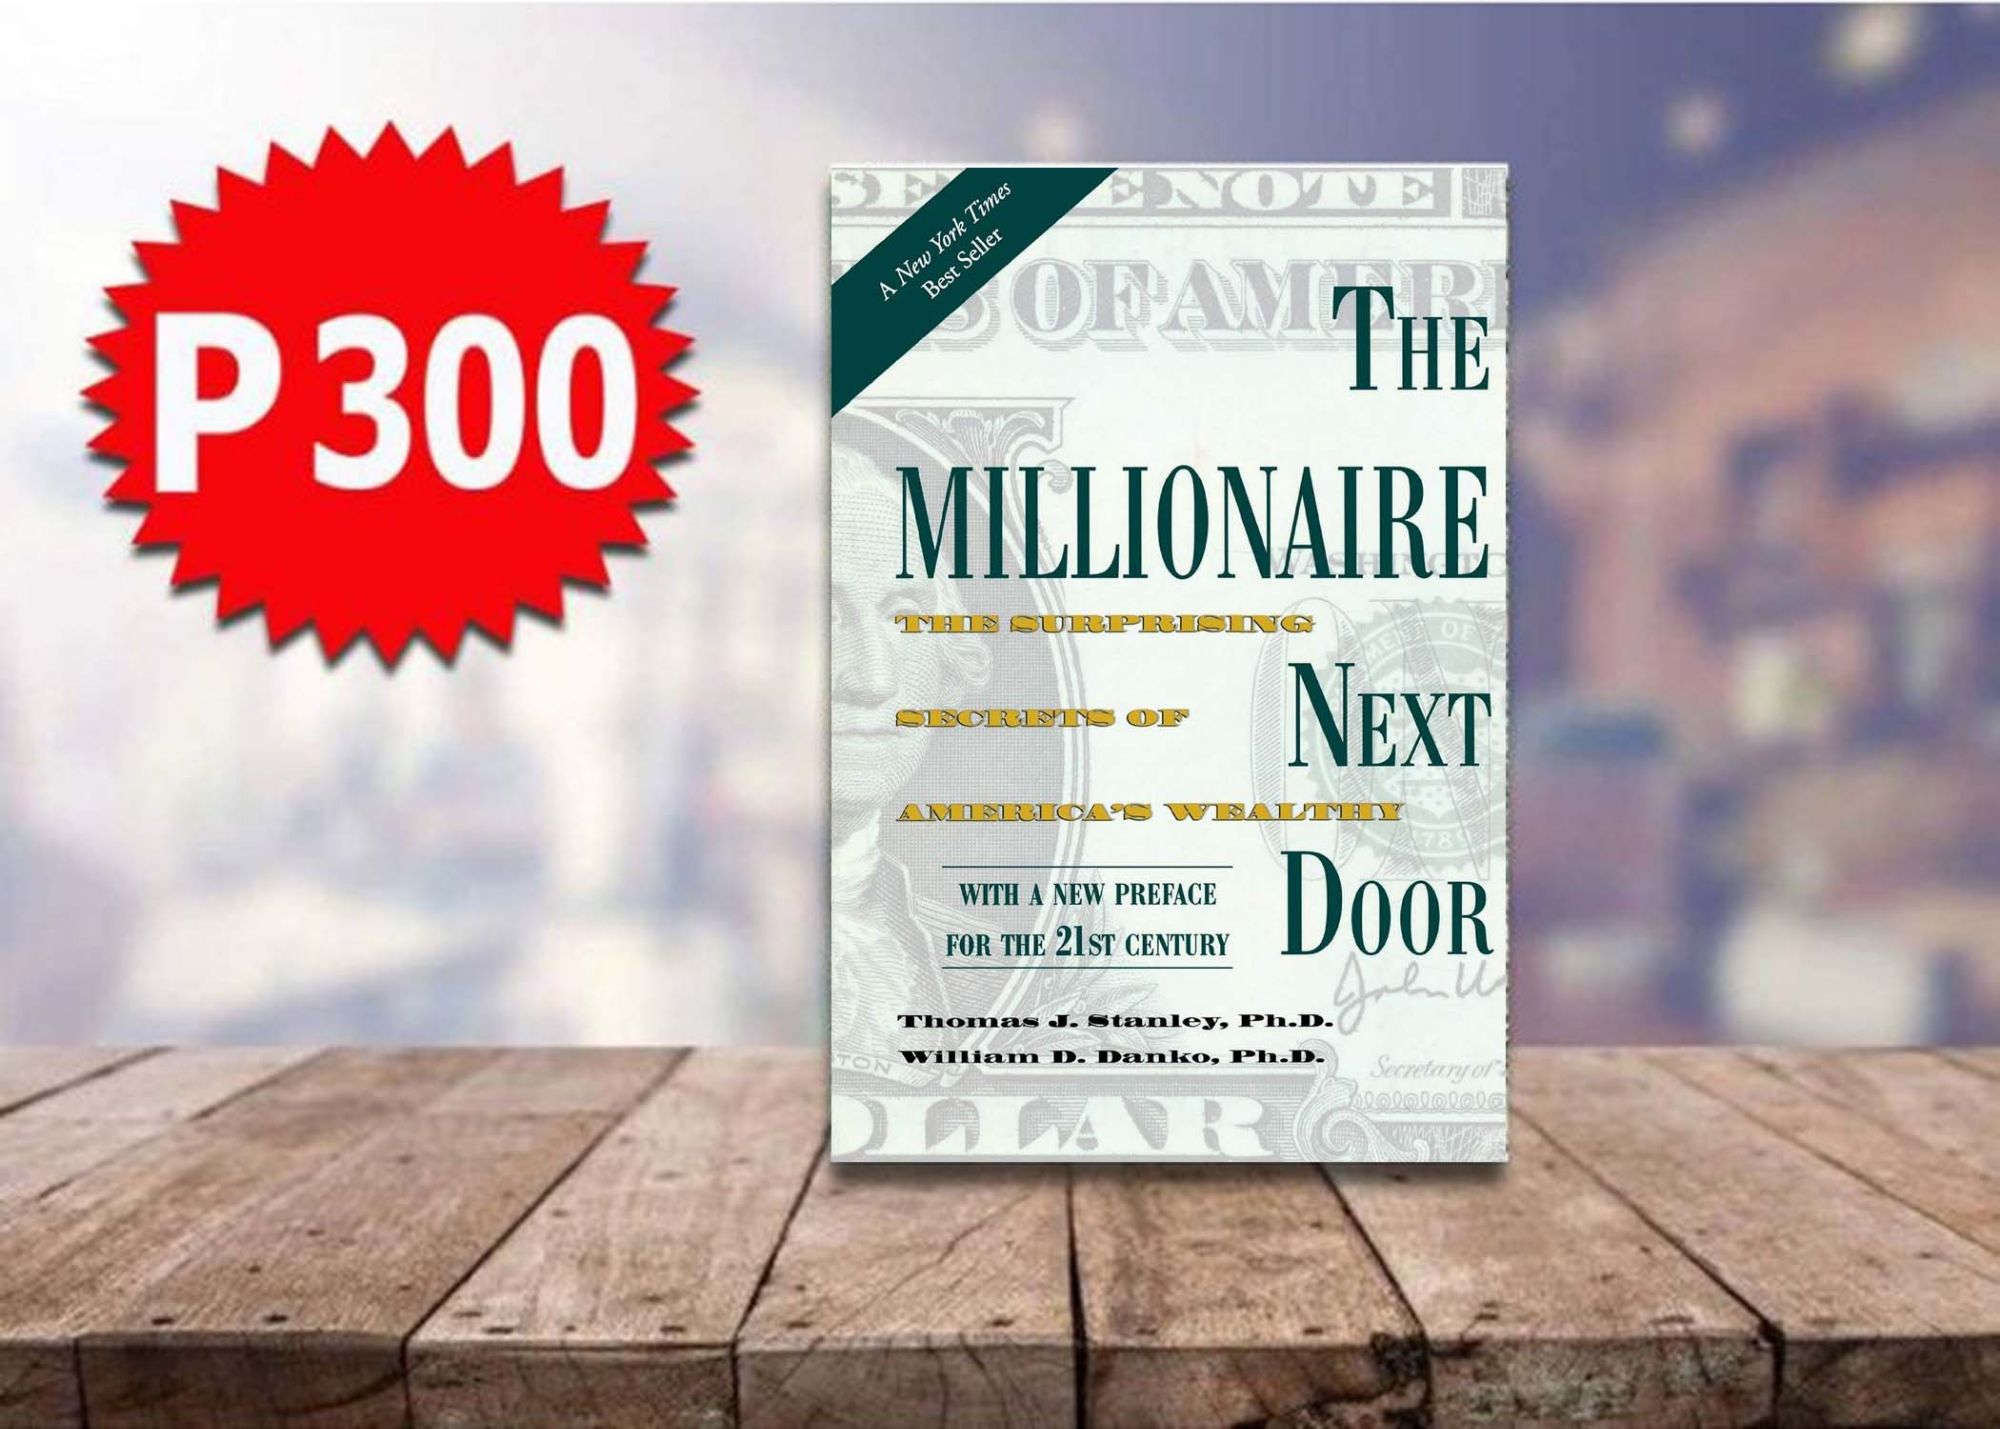 the millionaire next door audiobook free